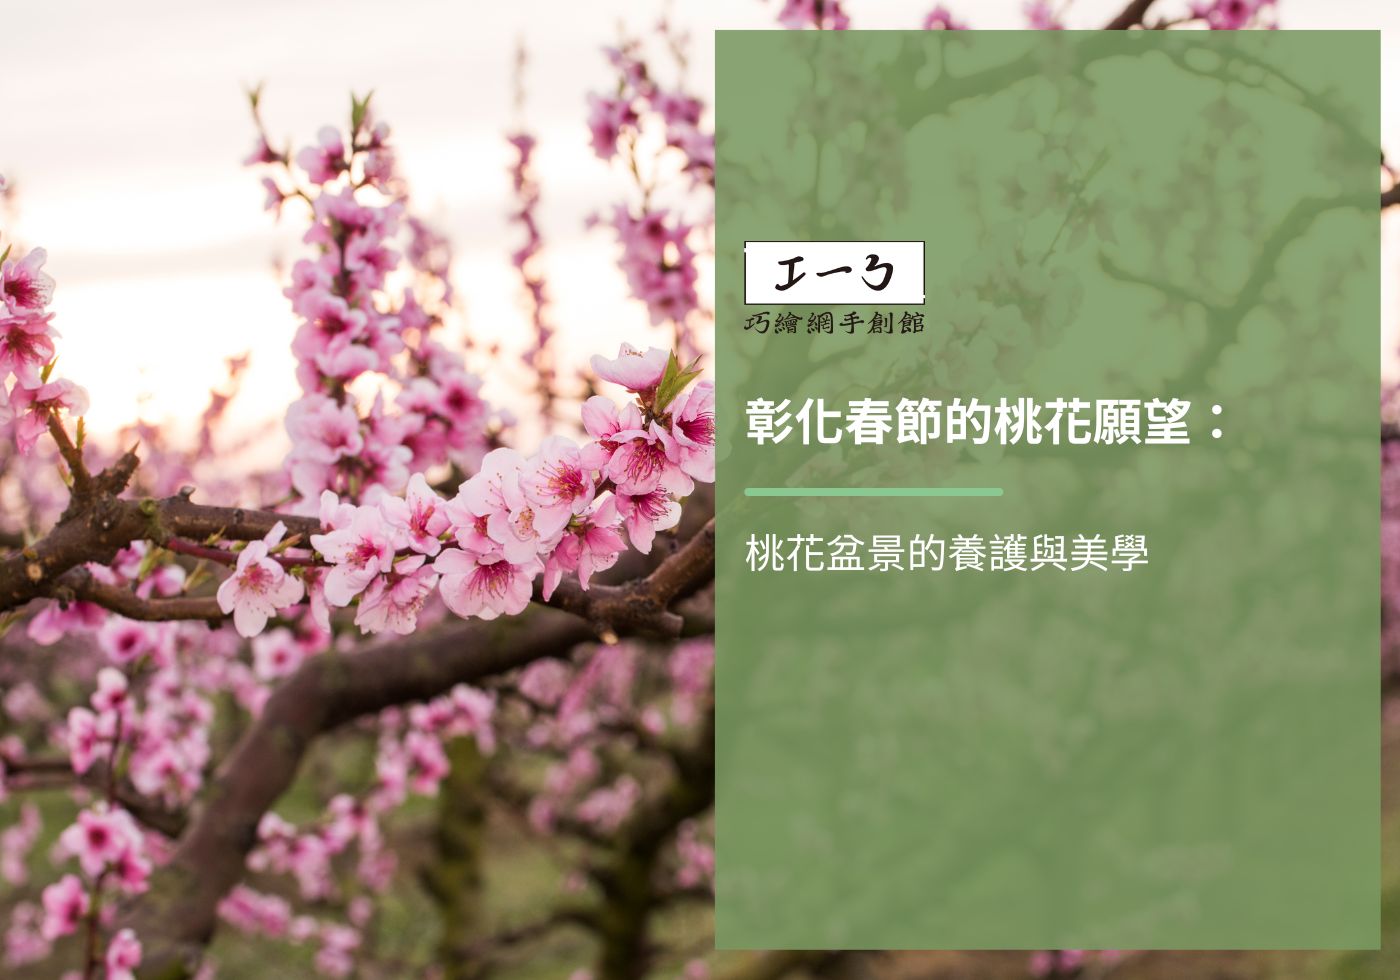 閱讀更多文章 彰化春節的桃花願望：桃花盆景的養護與美學